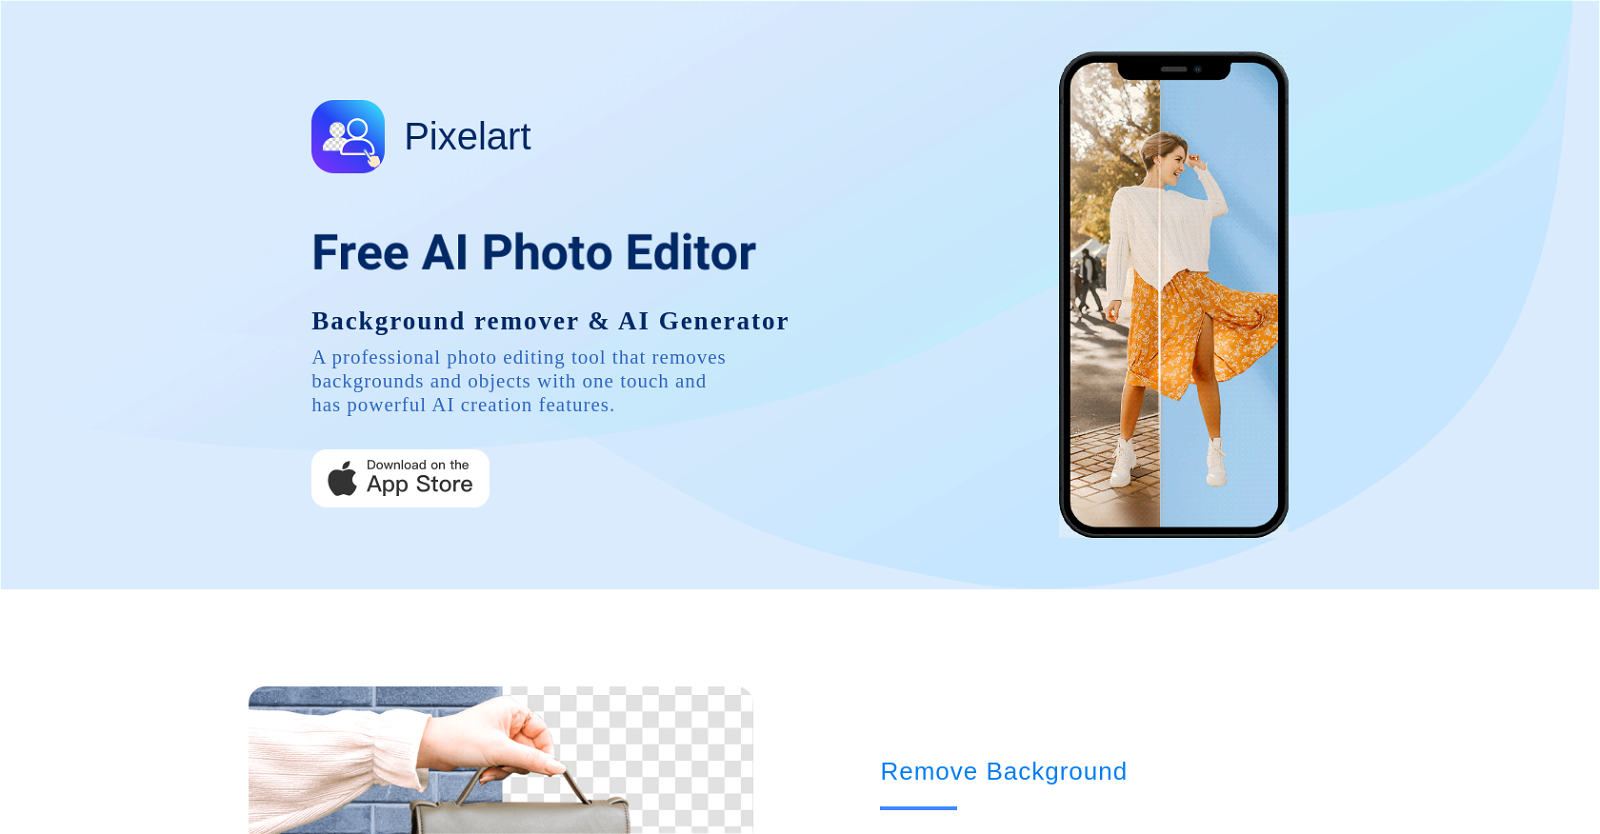 Pixelart website